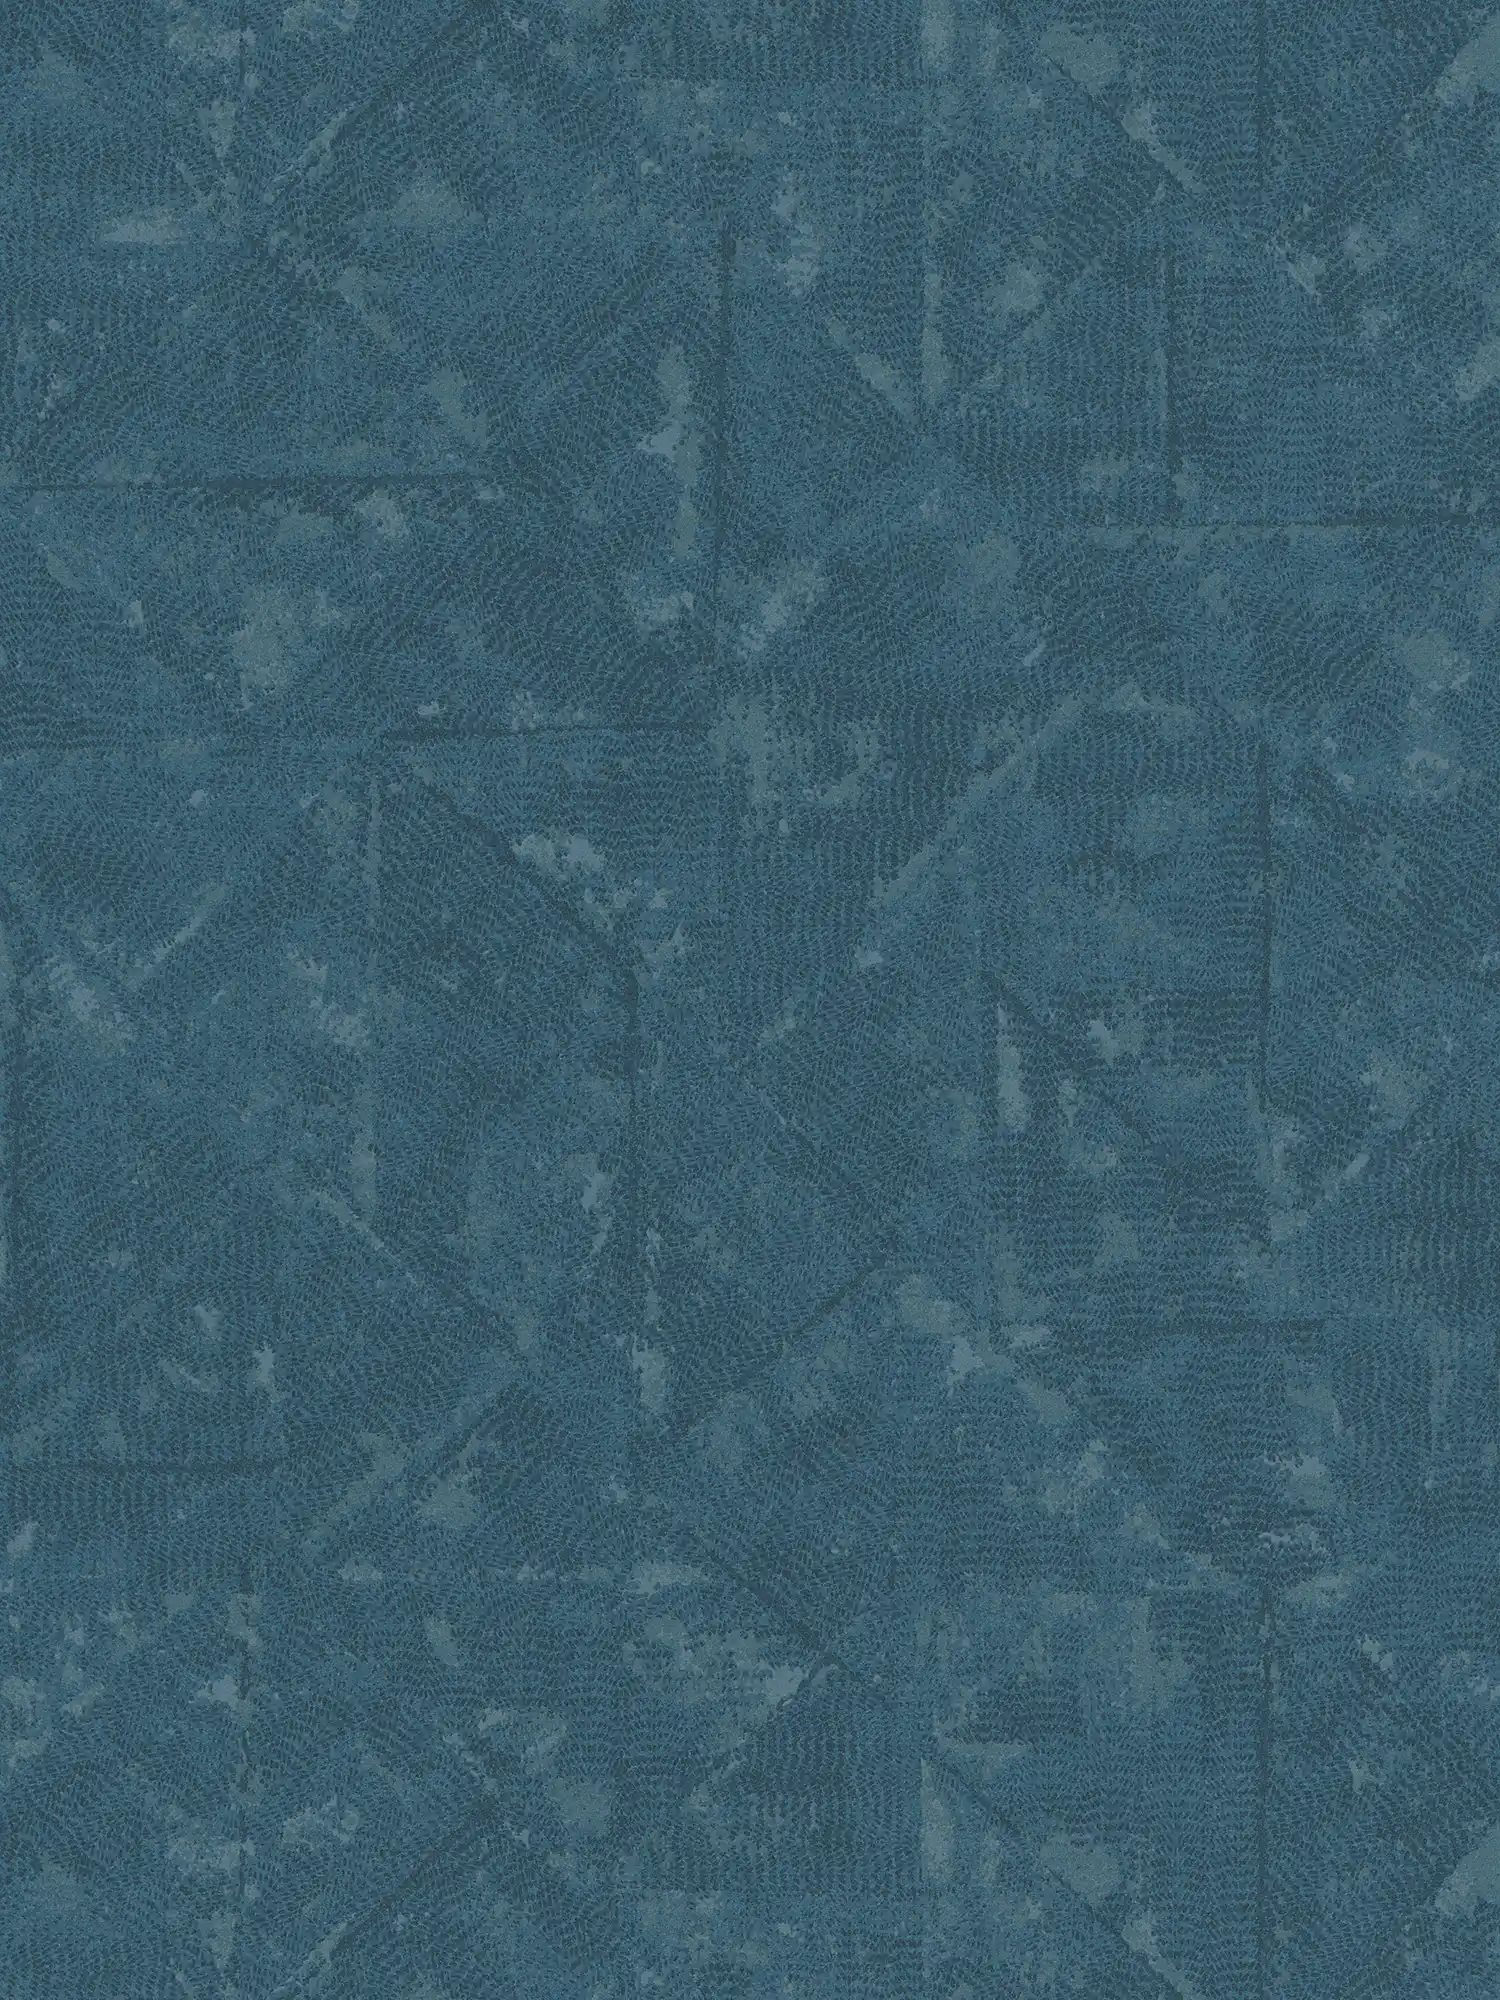 Carta da parati in tessuto non tessuto Petrol con dettagli asimmetrici - blu, grigio
